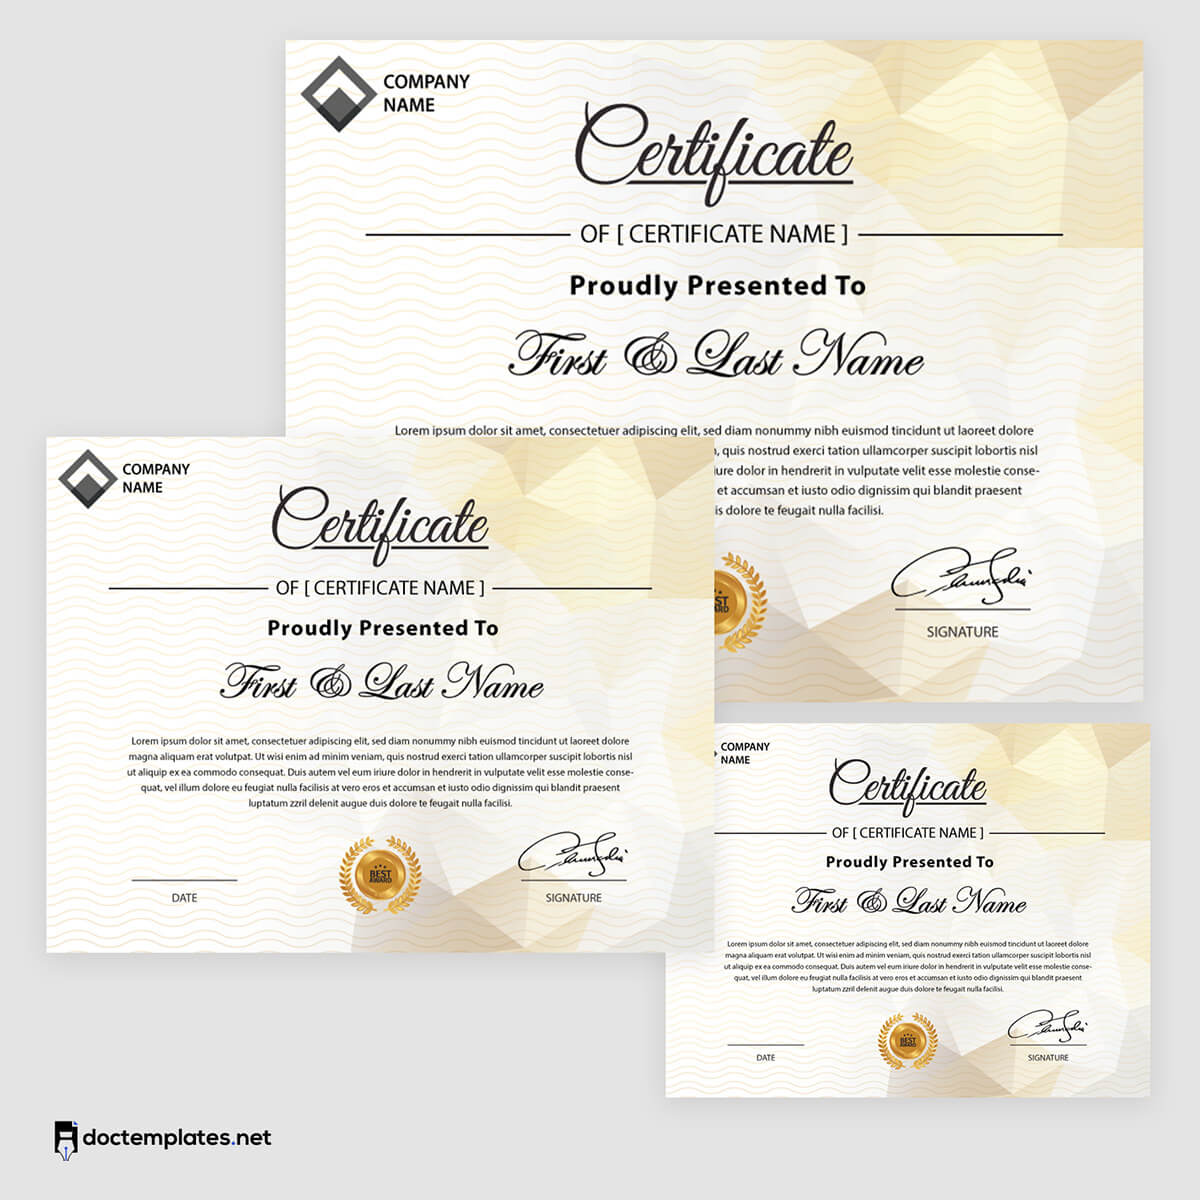 
editable certificate template pdf
